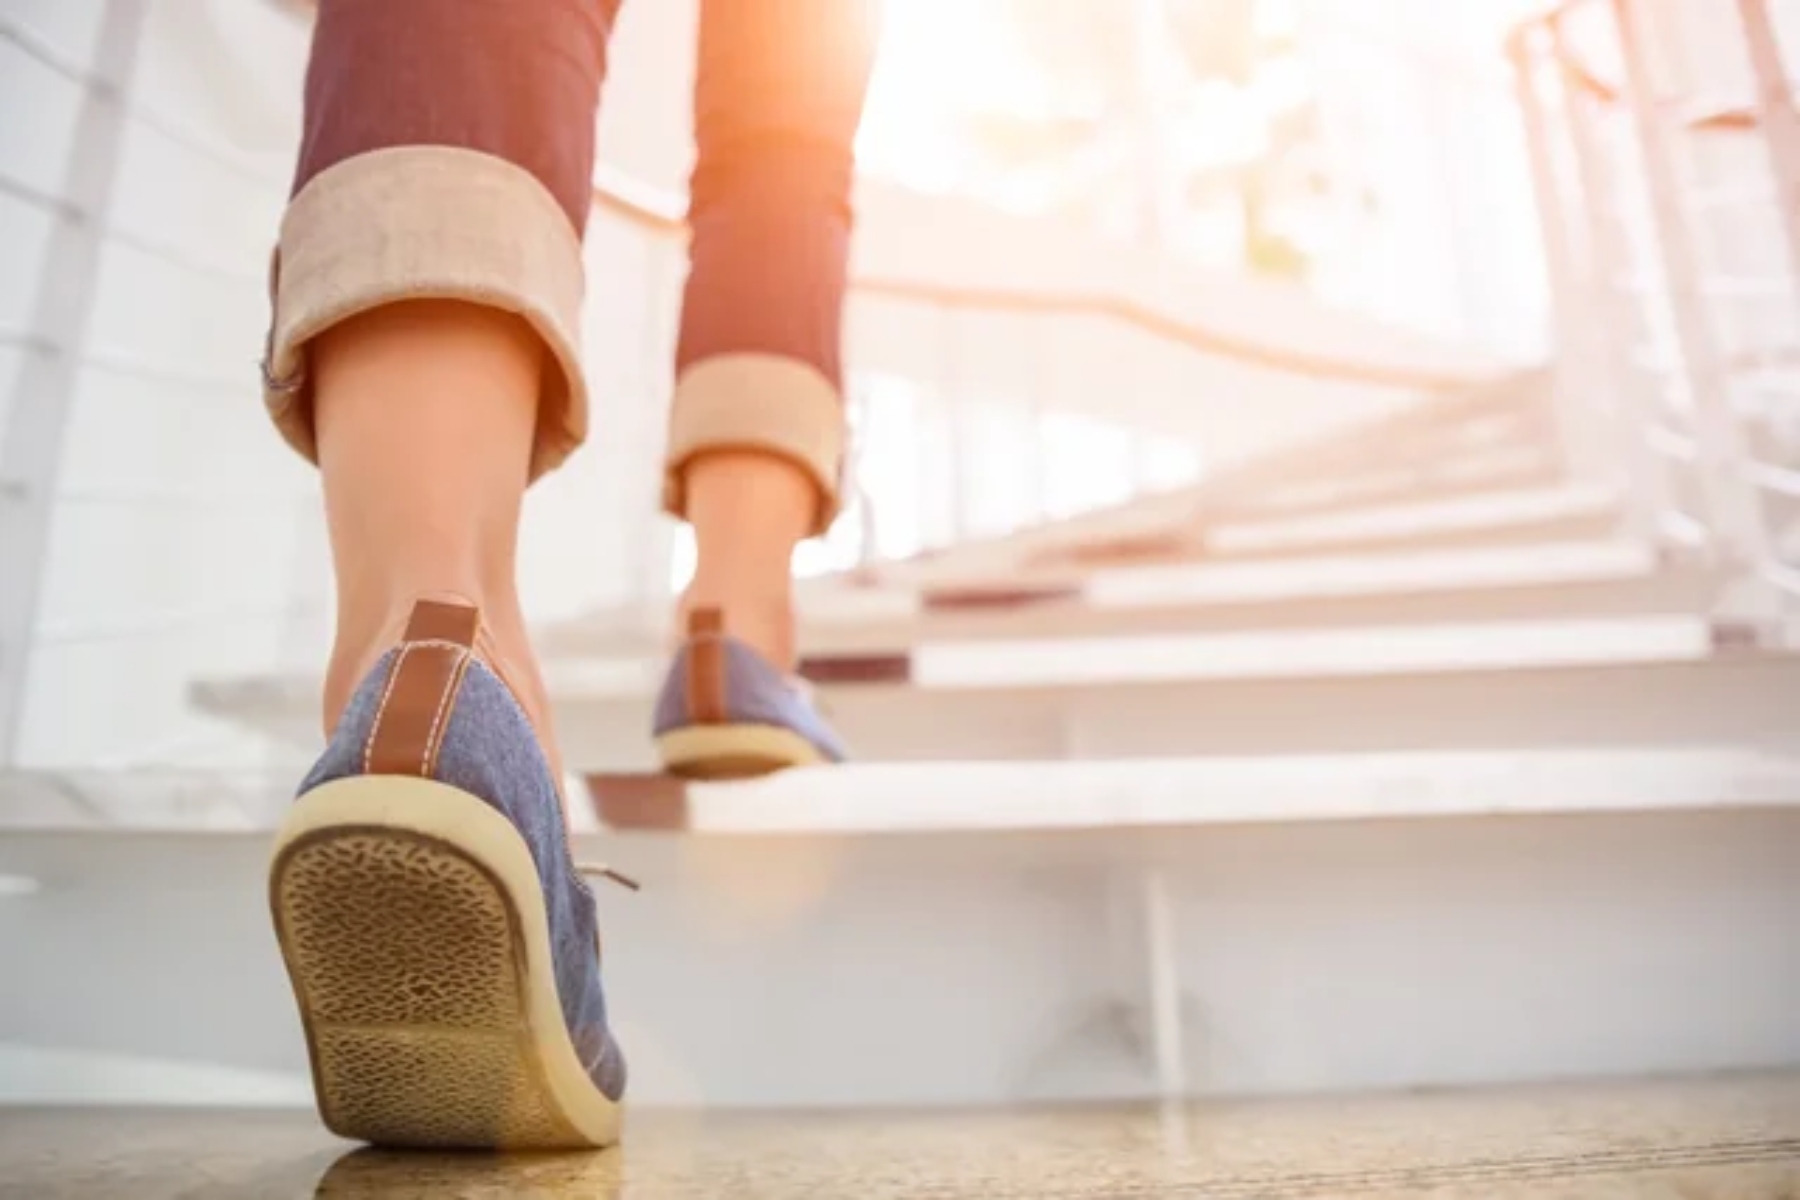 Σκάλες άσκηση: Μόλις 50 σκαλοπάτια την ημέρα μειώνουν τον κίνδυνο καρδιακής νόσου κατά 20%